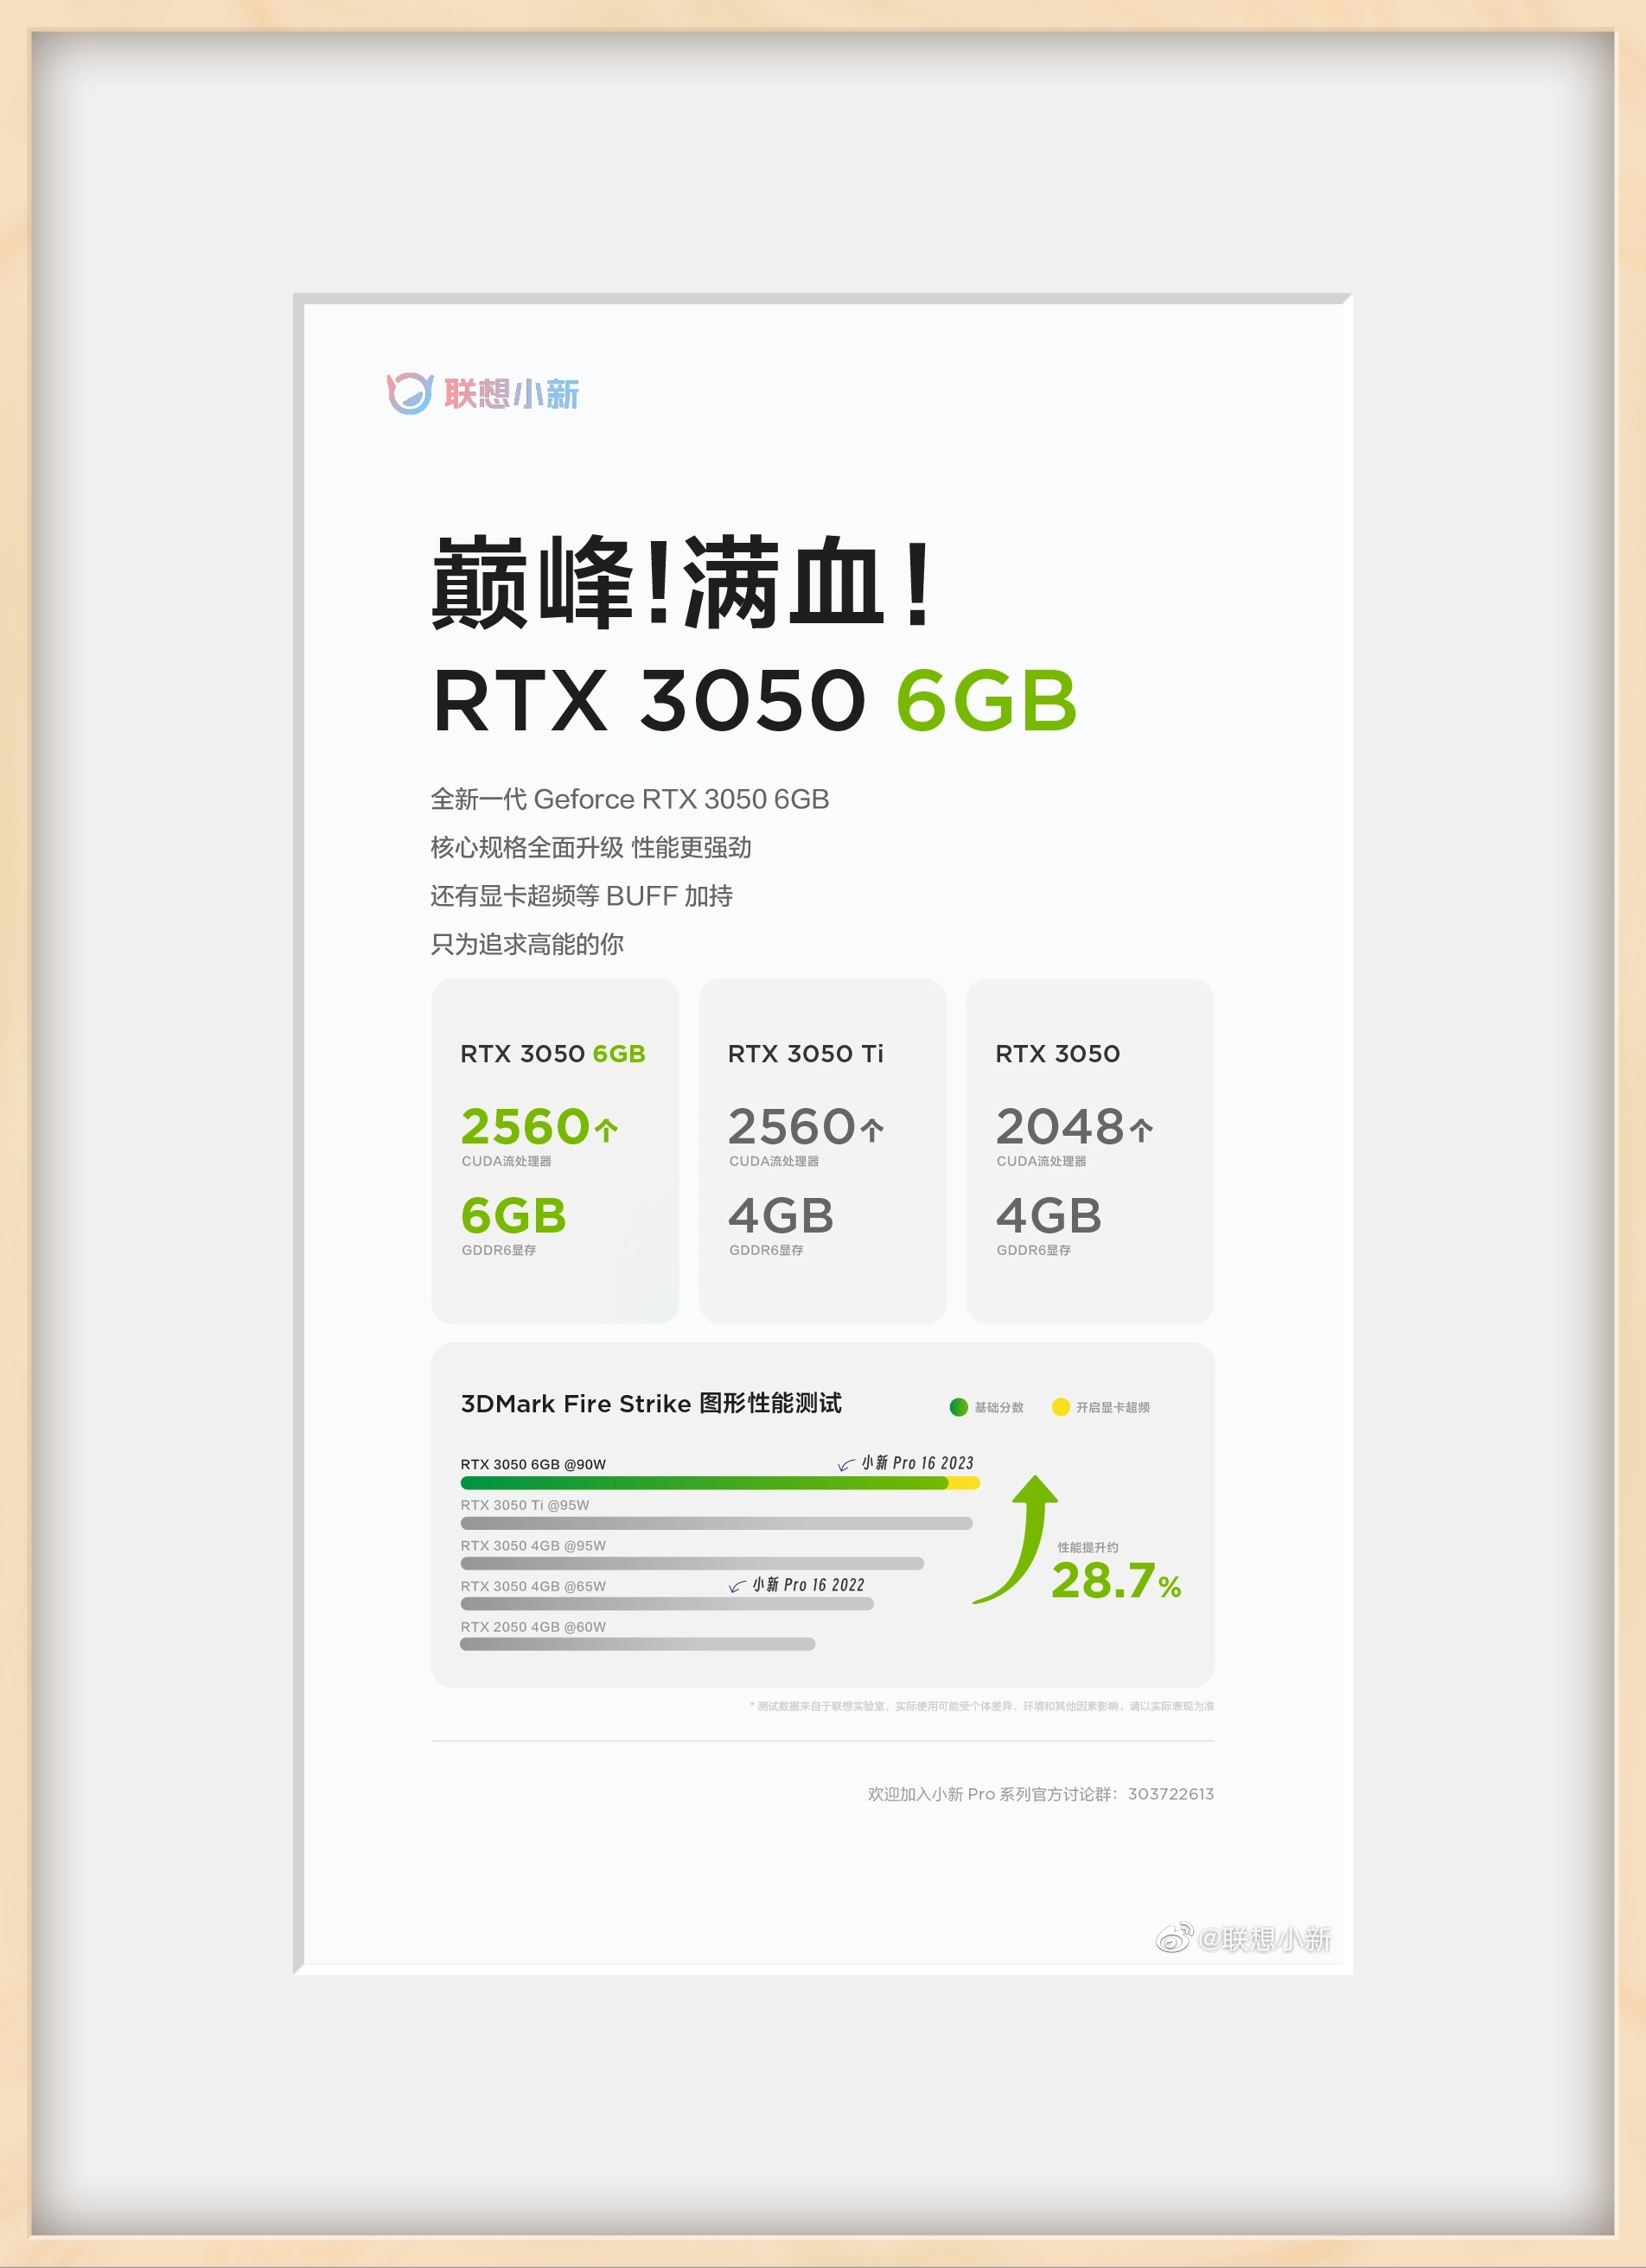 三款 RTX 3050 系笔记本 GPU 性能对比，最新 6GB 版提升不大 - 哔哩哔哩